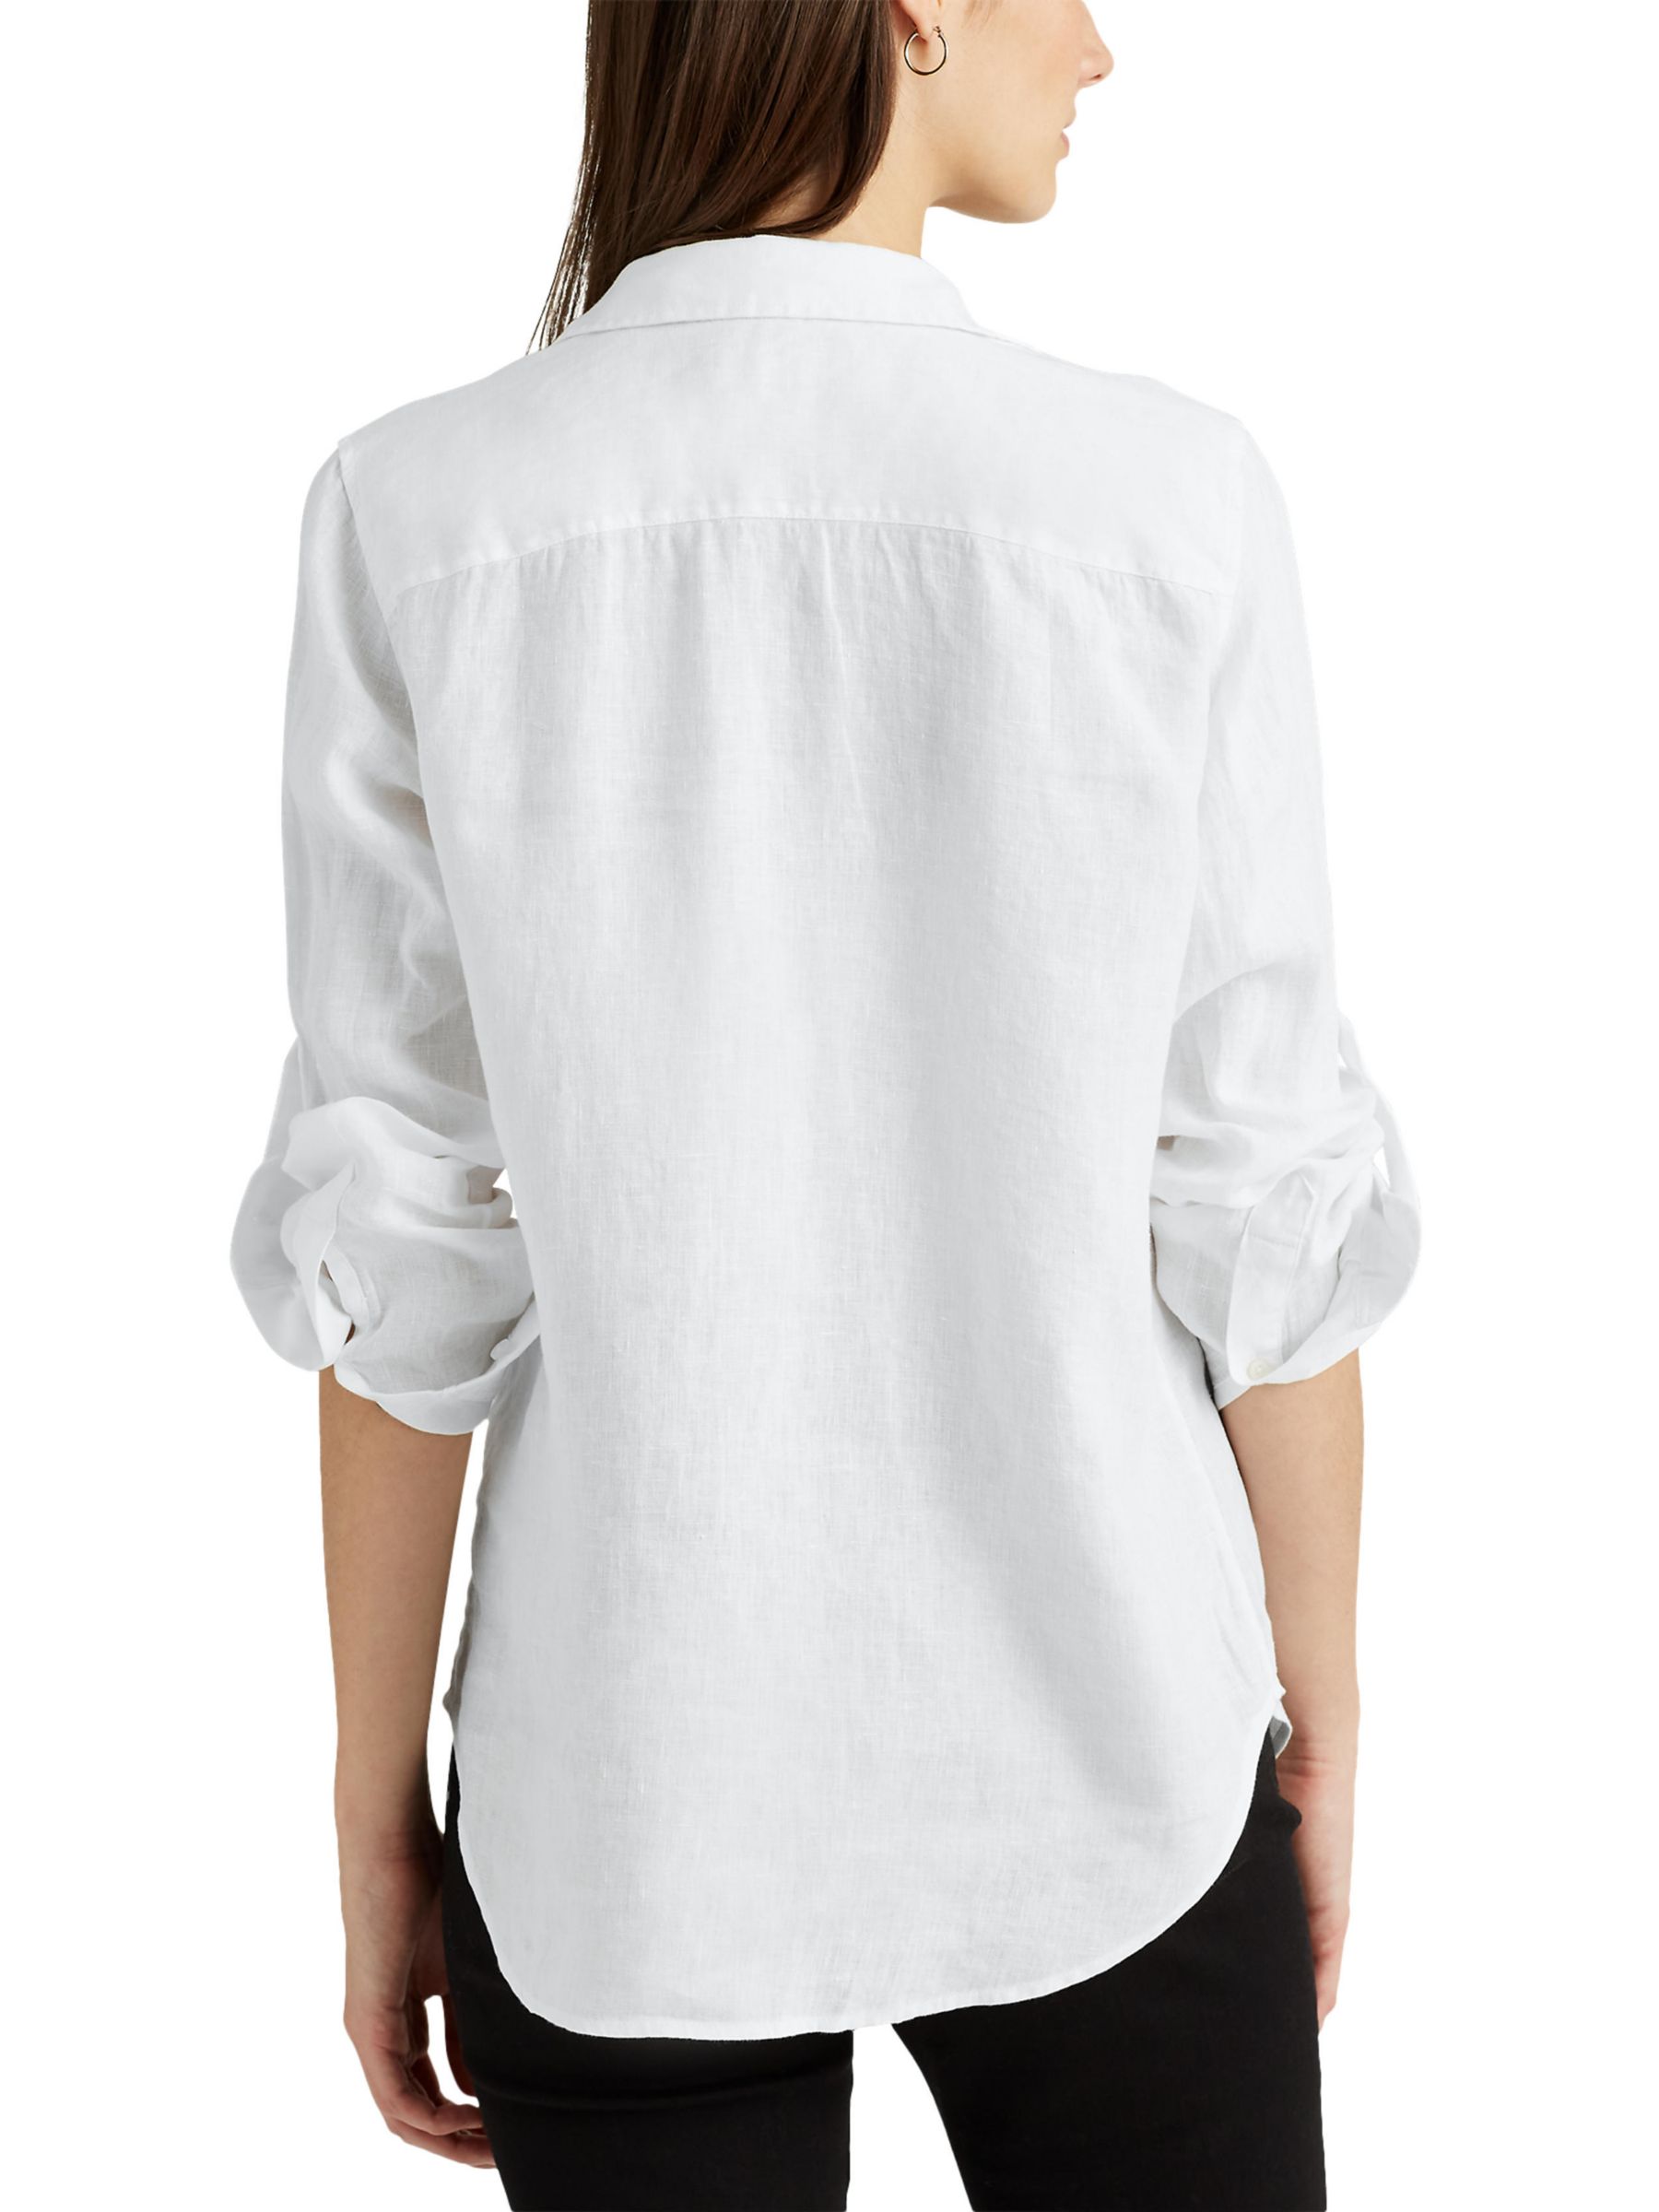 Lauren Ralph Lauren Karrie Linen Shirt, White, XS